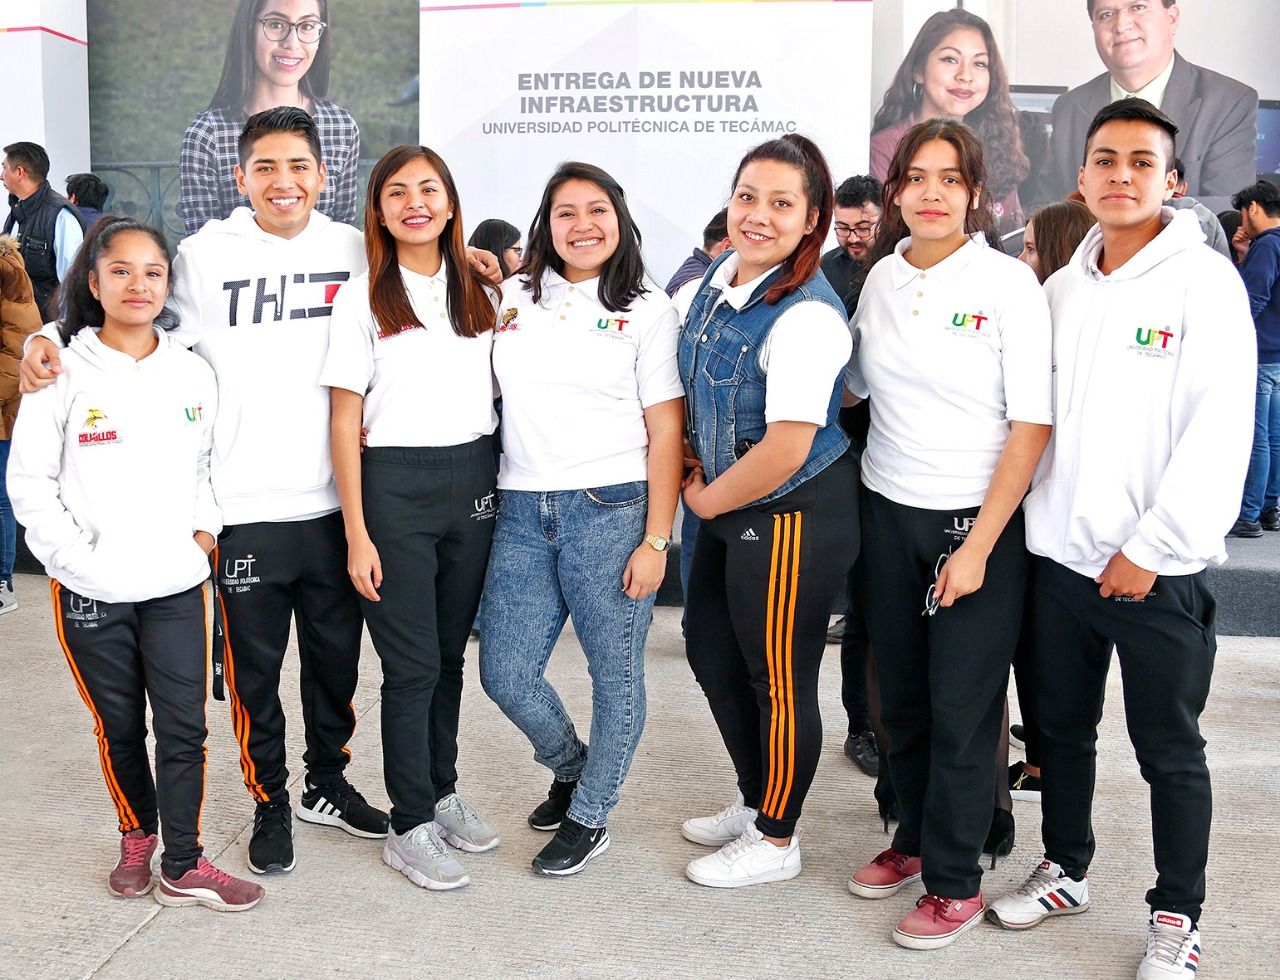 Ofrece universidad politécnica de Tecamac educación a 11 municipios del edomex, Hidalgo y Ciudad de México 